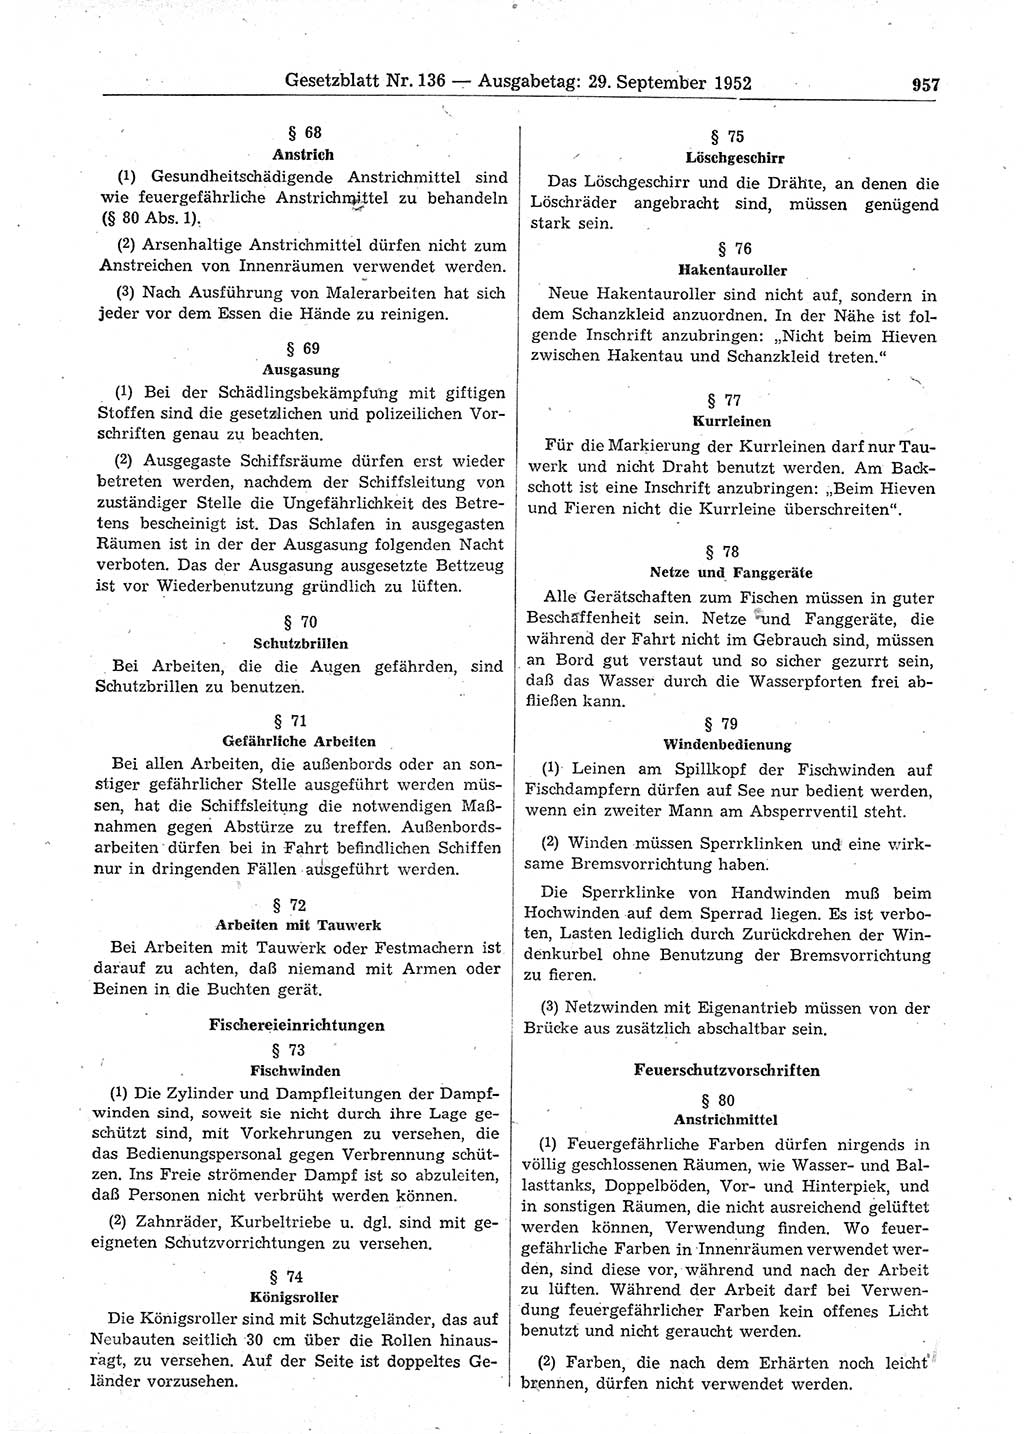 Gesetzblatt (GBl.) der Deutschen Demokratischen Republik (DDR) 1952, Seite 957 (GBl. DDR 1952, S. 957)